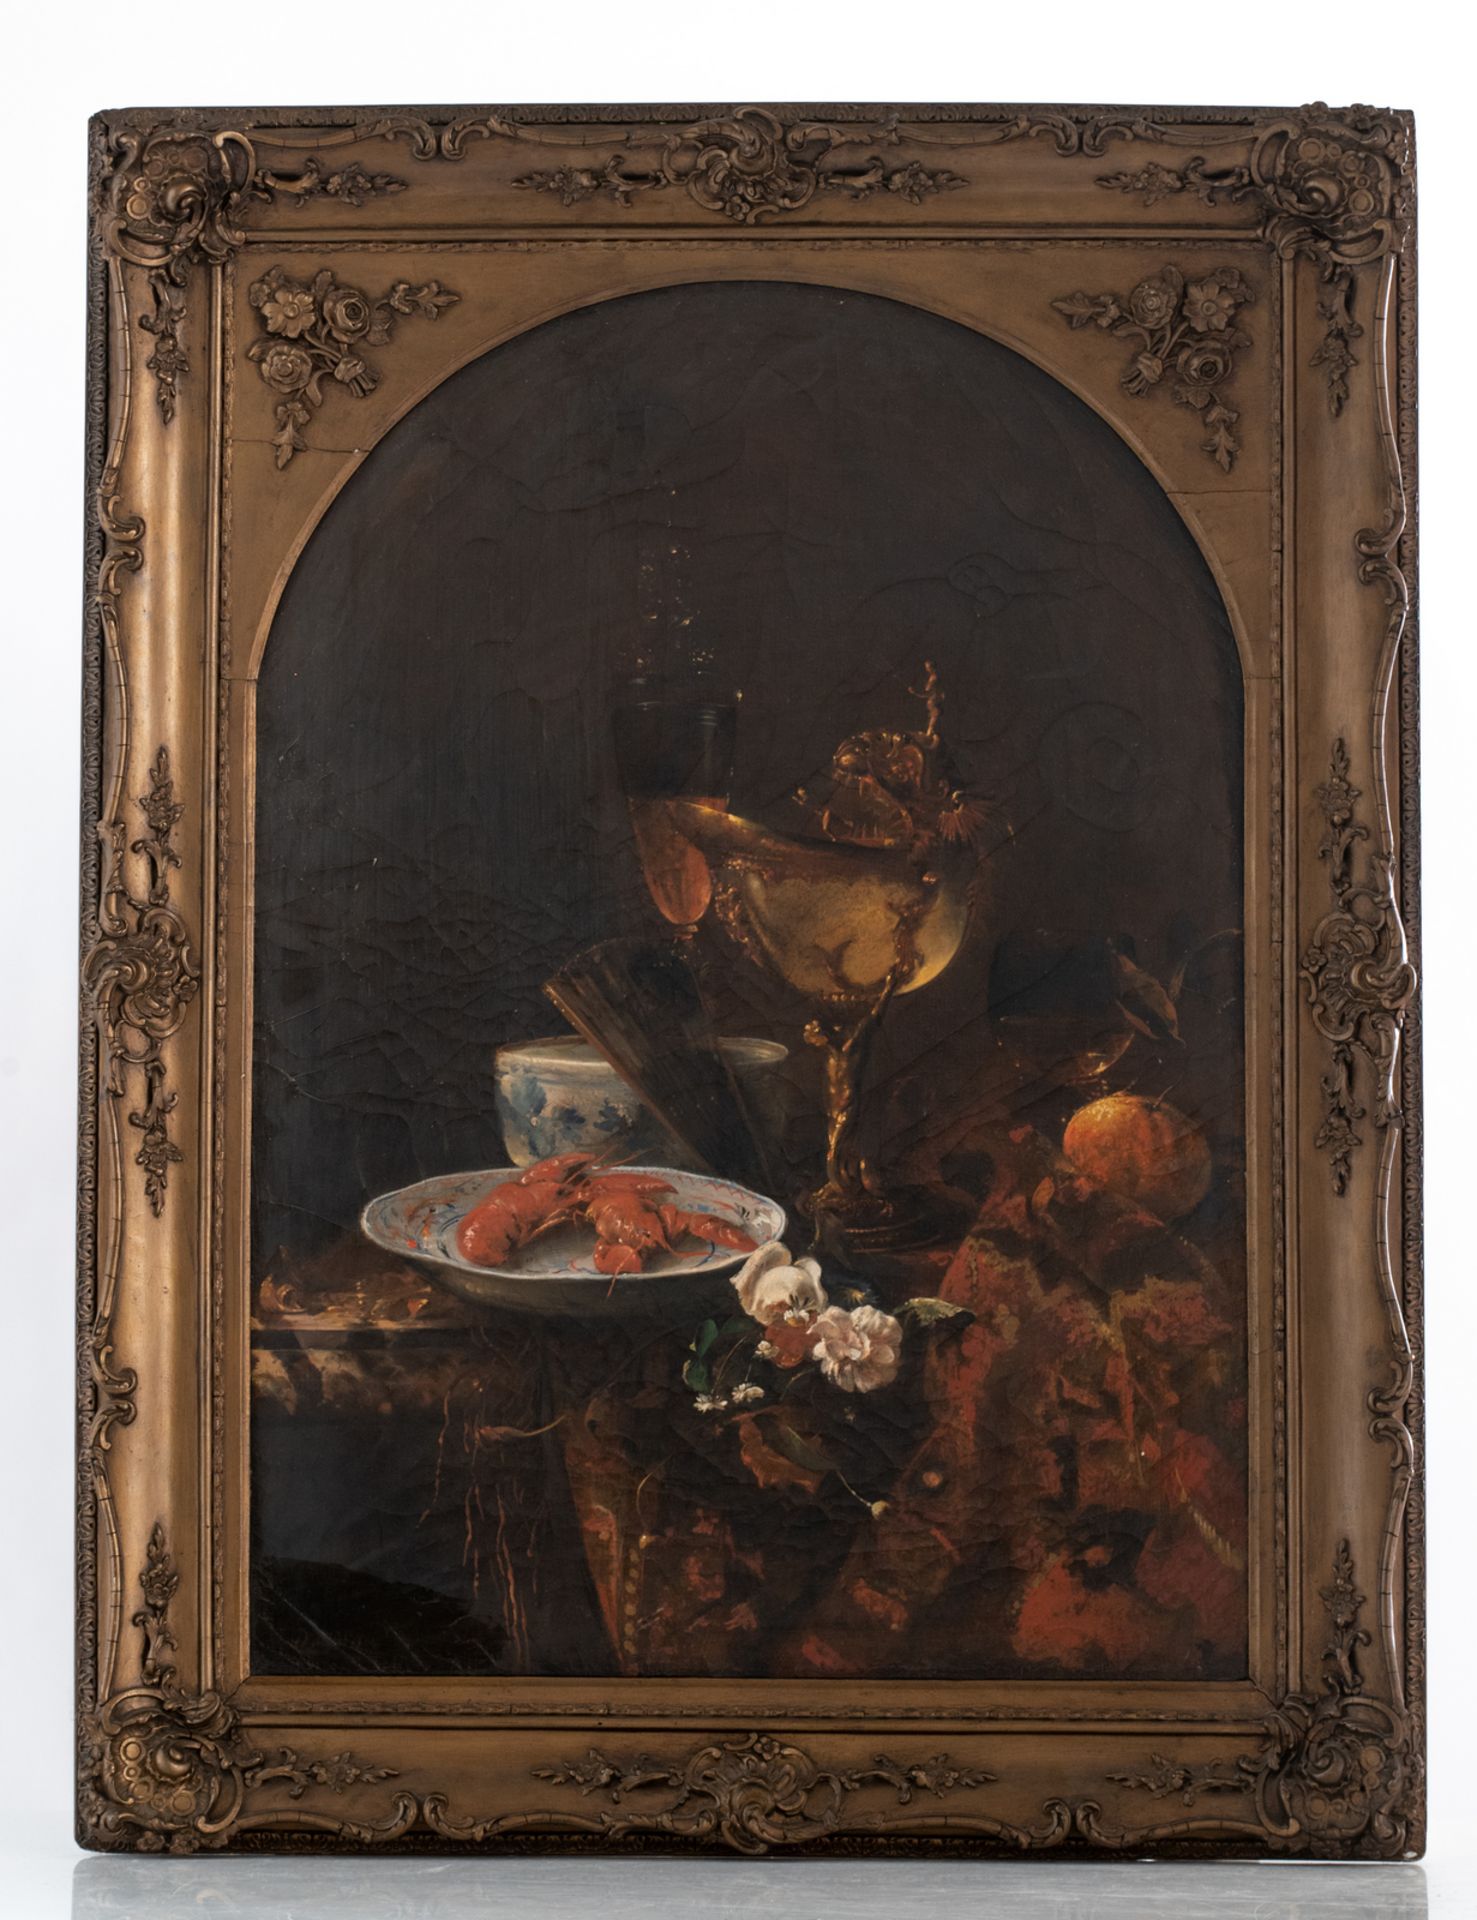 De Noter D., a still life in the 17thC manner, oil on canvas, 58 x 82 cm - Bild 2 aus 3